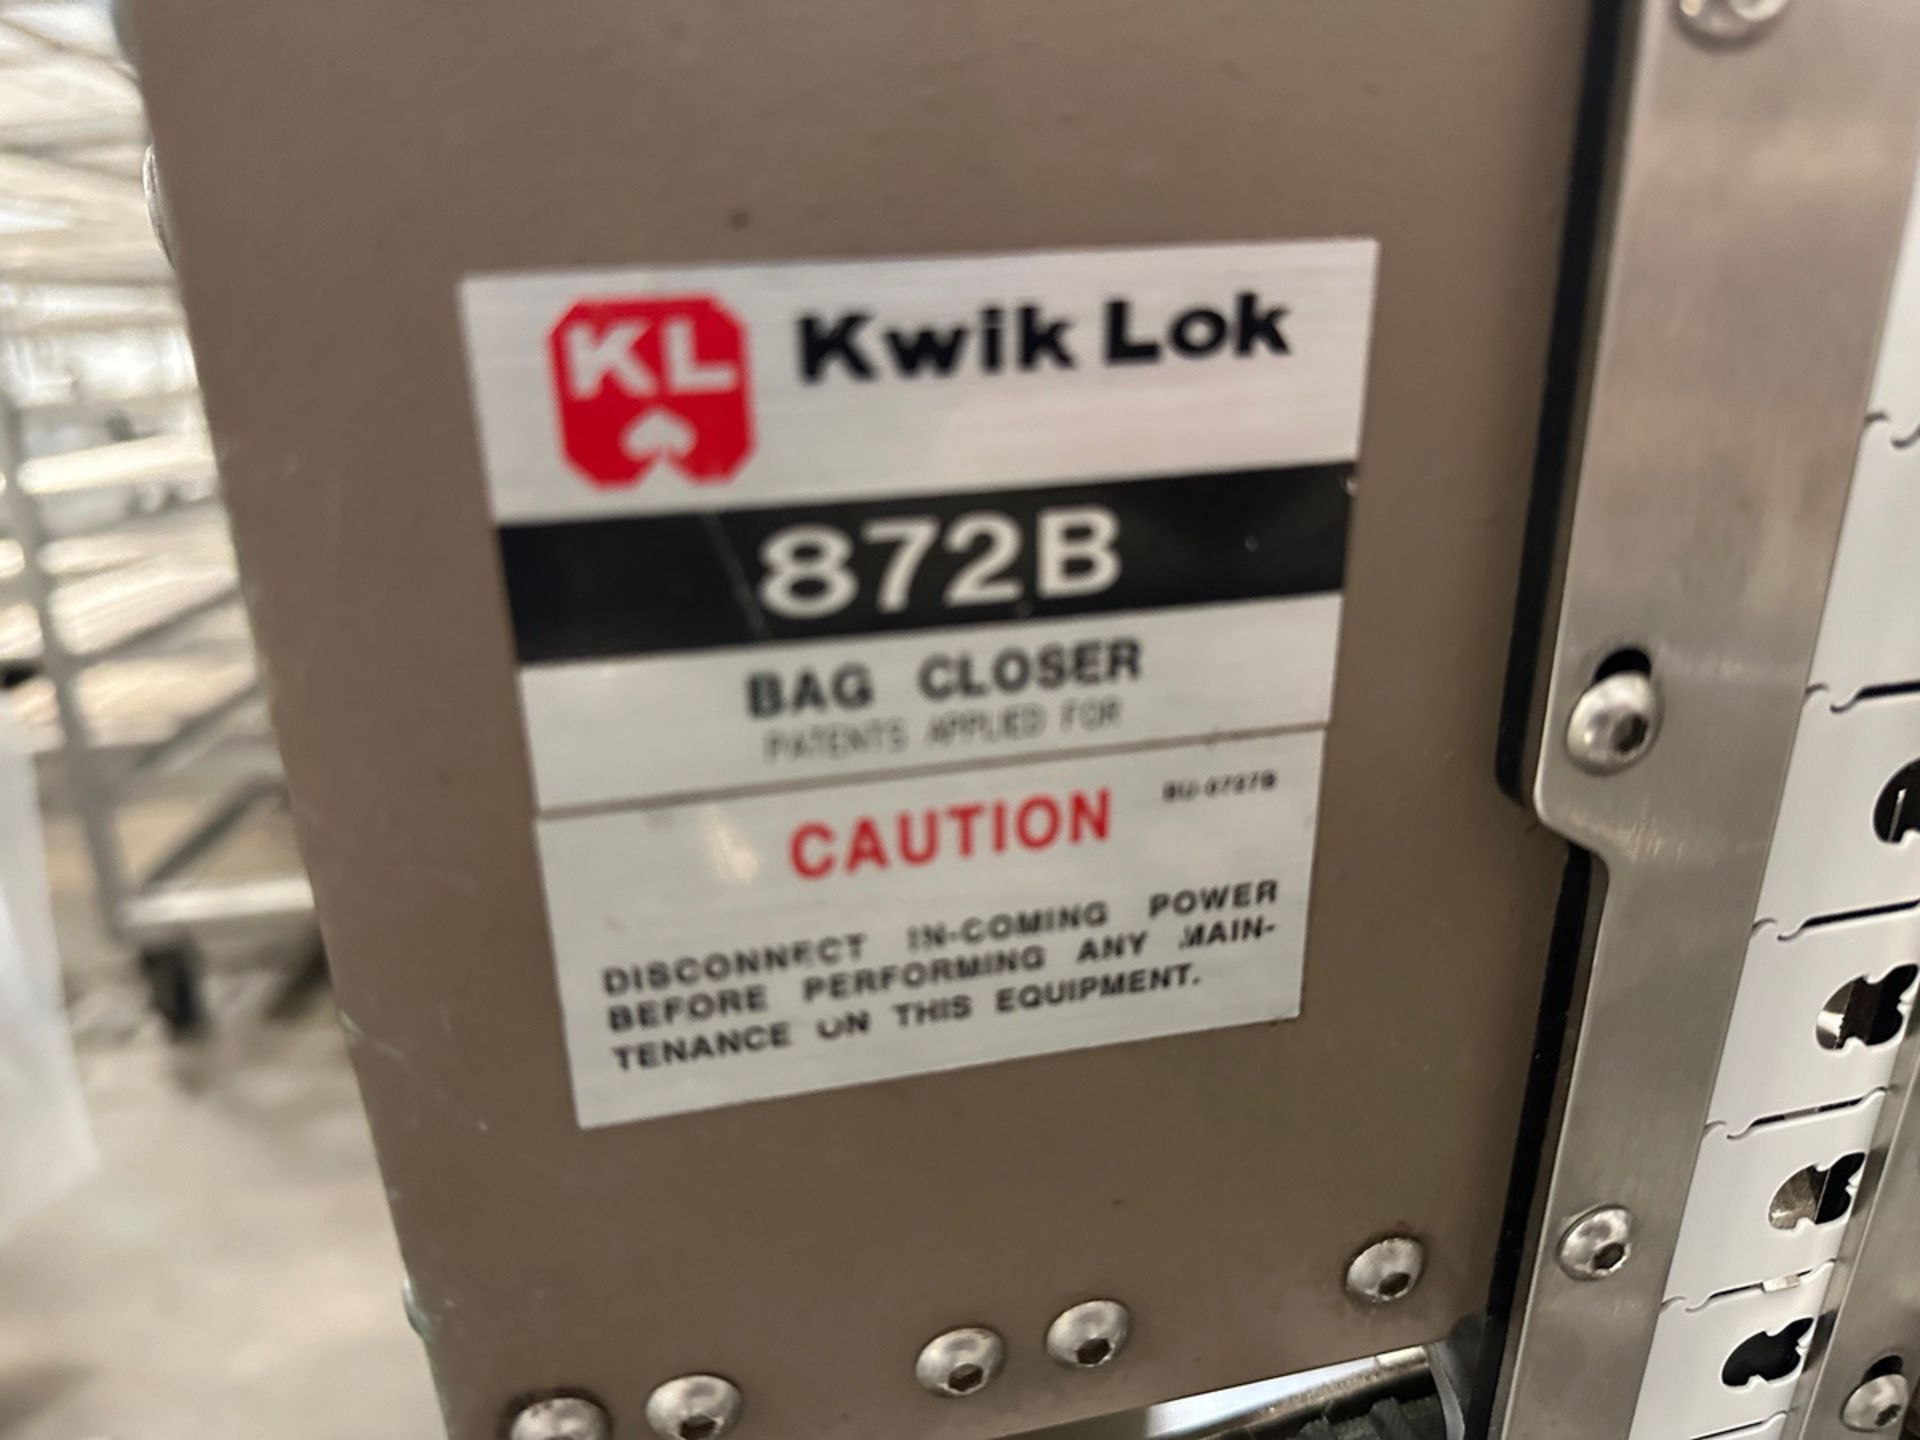 Kwik Lok Model 872B Bag Closer - Image 3 of 6